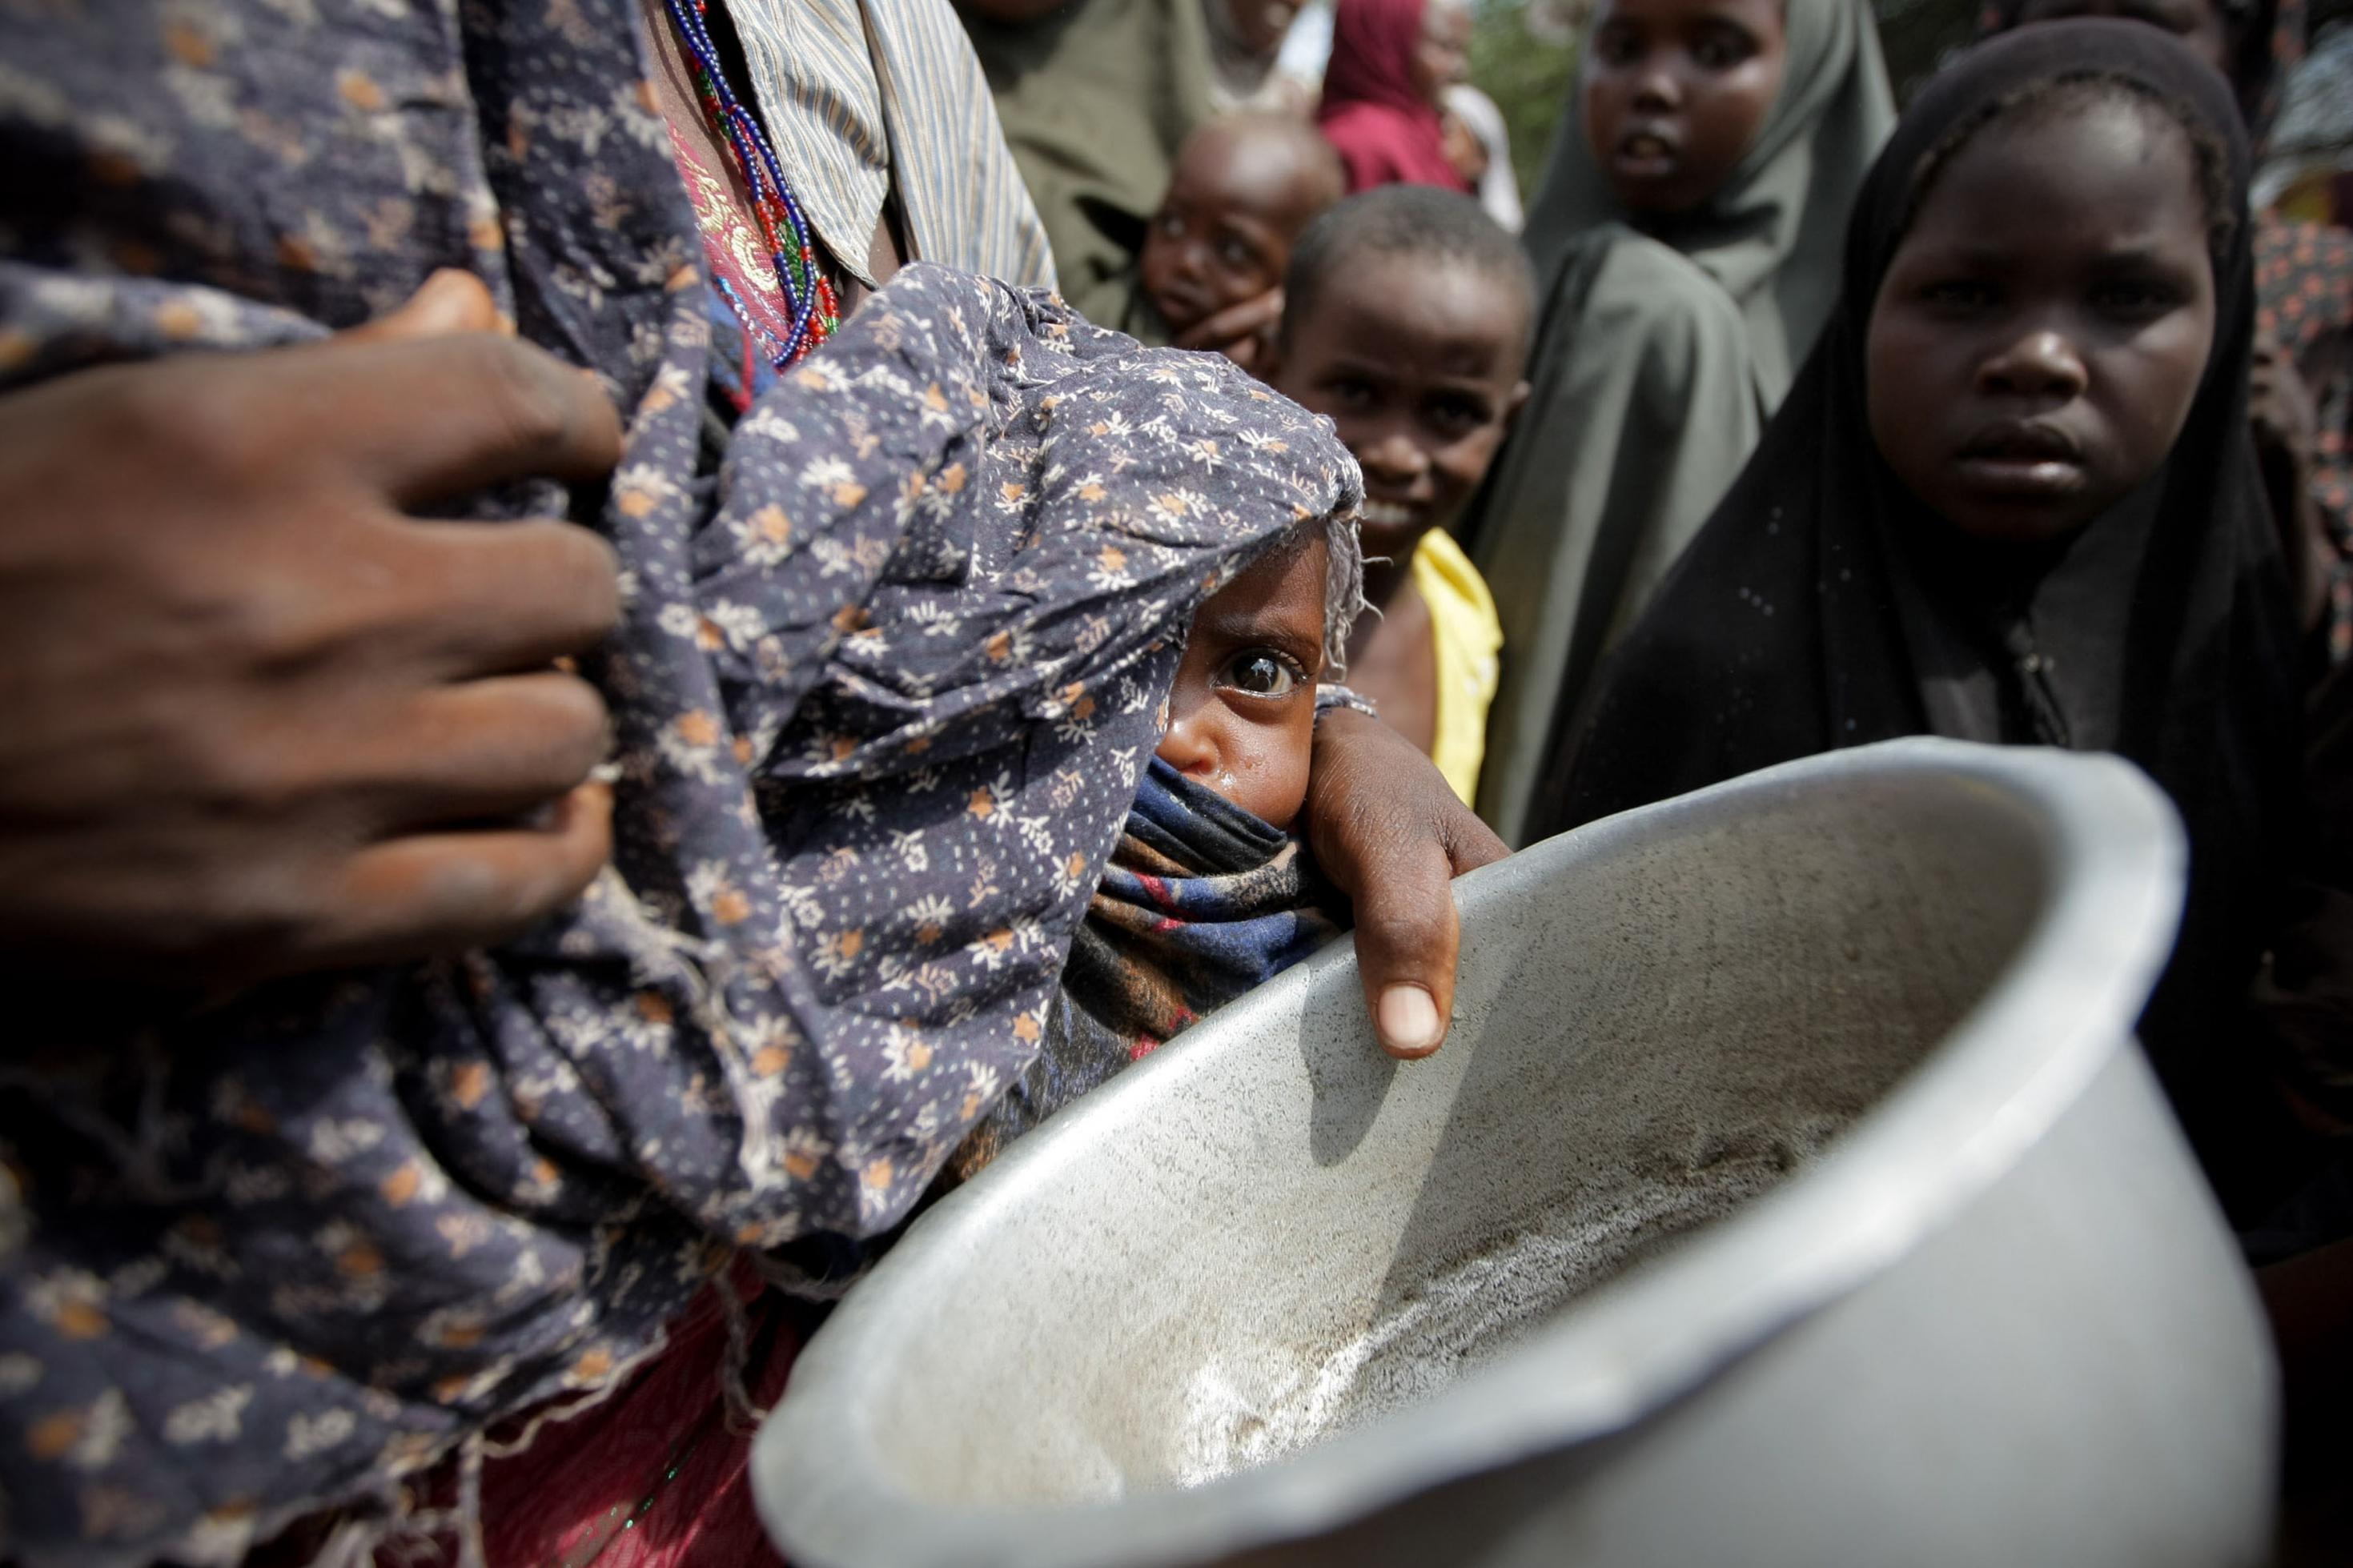 Eine Frau mit ihrem unterernährten Baby steht im Jahr 2011 im somalischen Flüchtlingslager Badbado nach Essen an. Man sieht nur einen Ausschnitt von ihrer Körpermitte. Sie trägt ein kleines Kind an der Hüfte, das unter einem Tuch hervorblickt. Die Mutter hat eine Blechschüssel in der Hand. Im Hintergrund stehen andere Menschen. –
Bilder solchen Elends rühren Menschen vielleicht zu Spenden für Hungernden in Afrika, aber als Symbolbild des Klimawandels taugen sie wenig: zu weit weg vom Alltag sind die Betroffenen, zu wenig drängt sich dem Betrachter auf, dass die Veränderung der Muster des Wetters entscheidend zur Not auf den fremden Kontinent beiträgt.